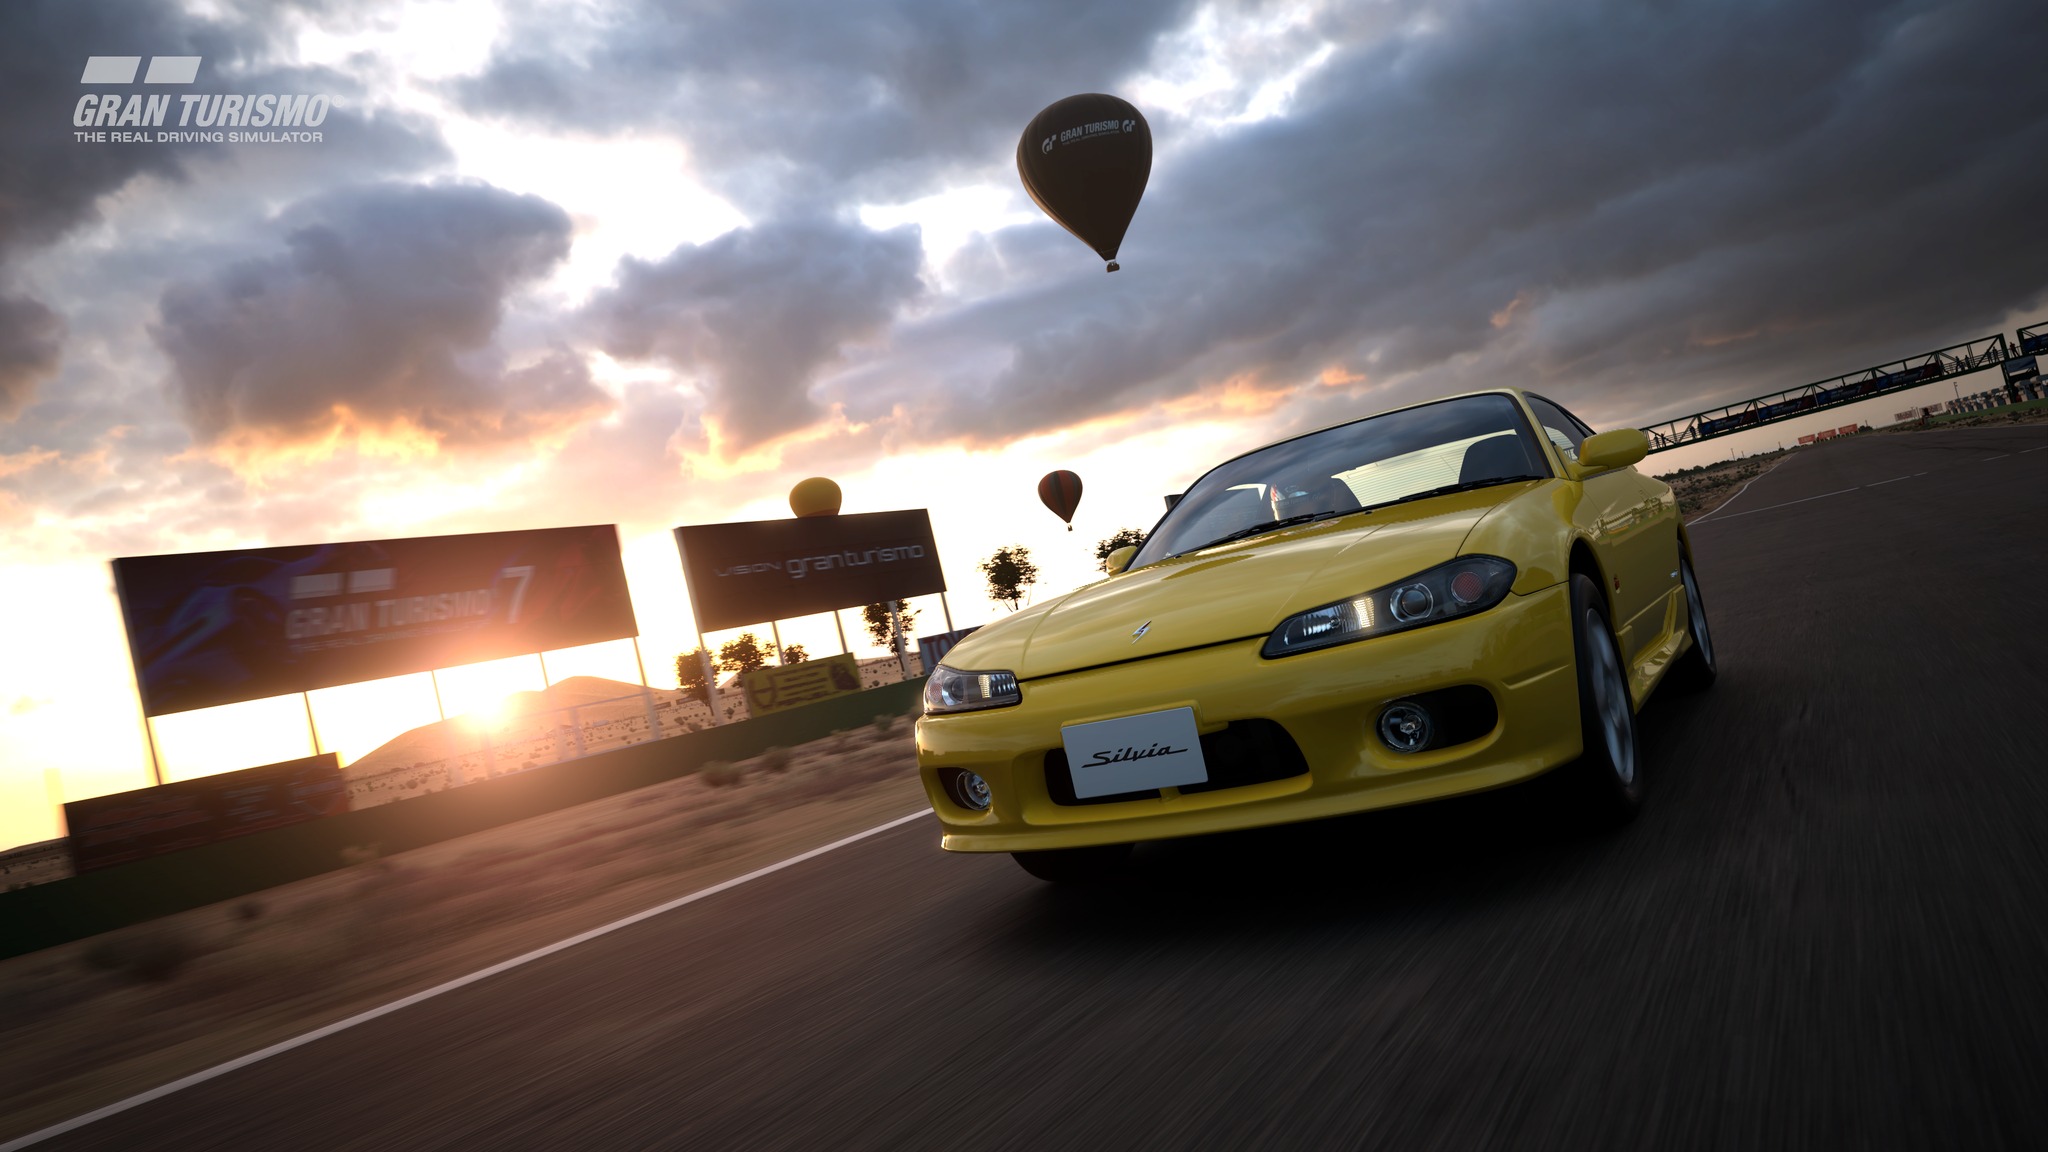 Gran Turismo 7 afunda-se no Metacritic